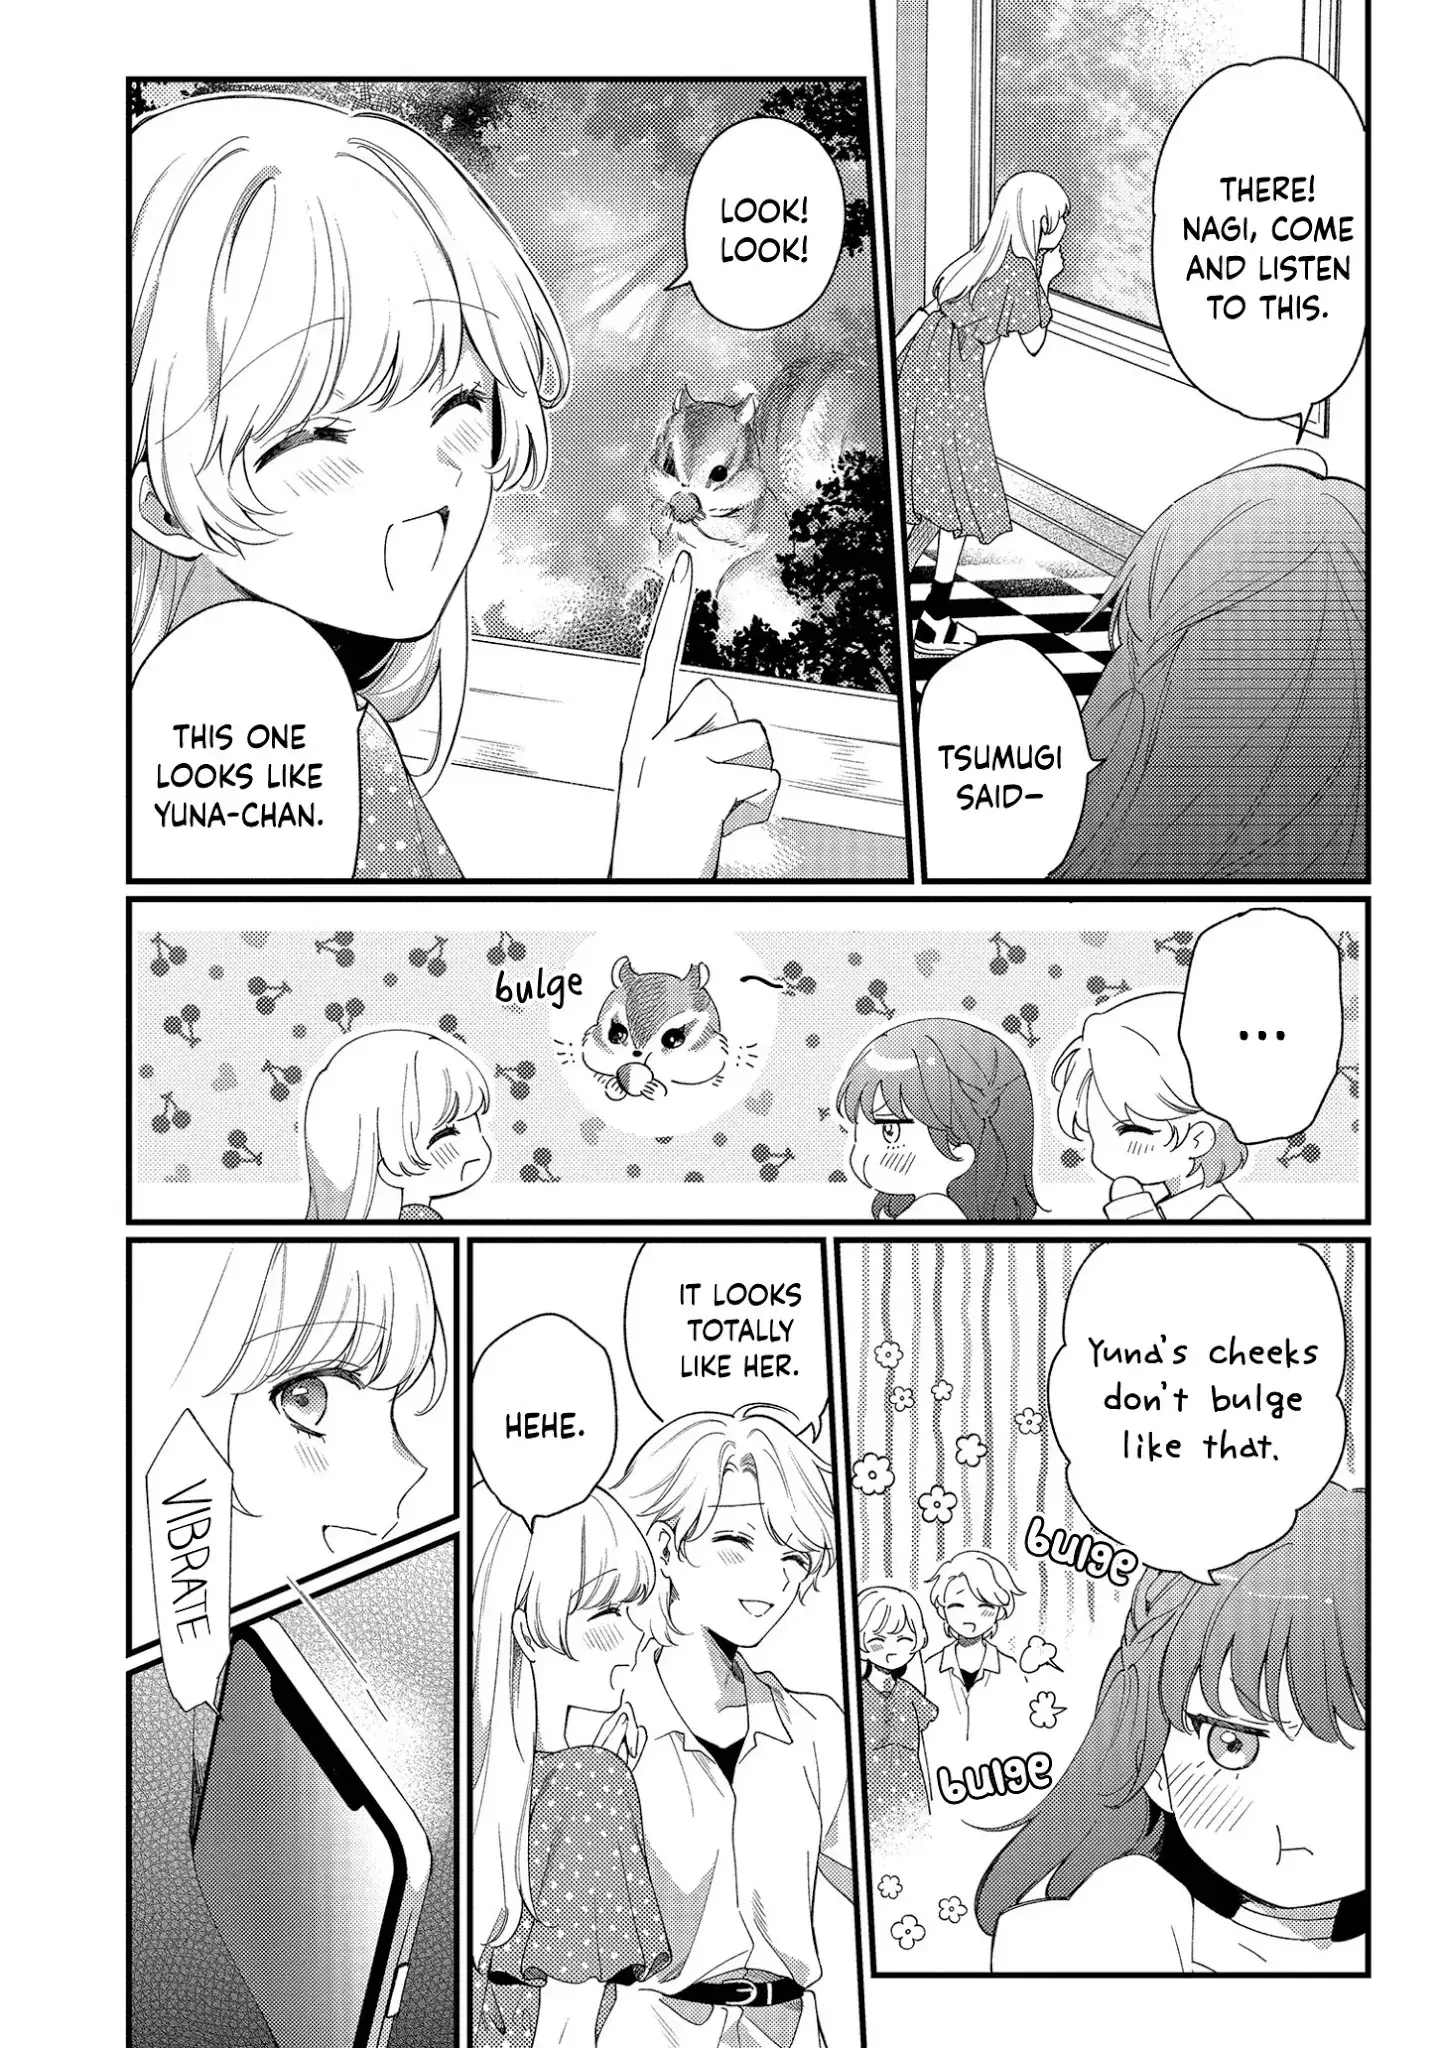 No Match For Aoi-Kun - 3 page 14